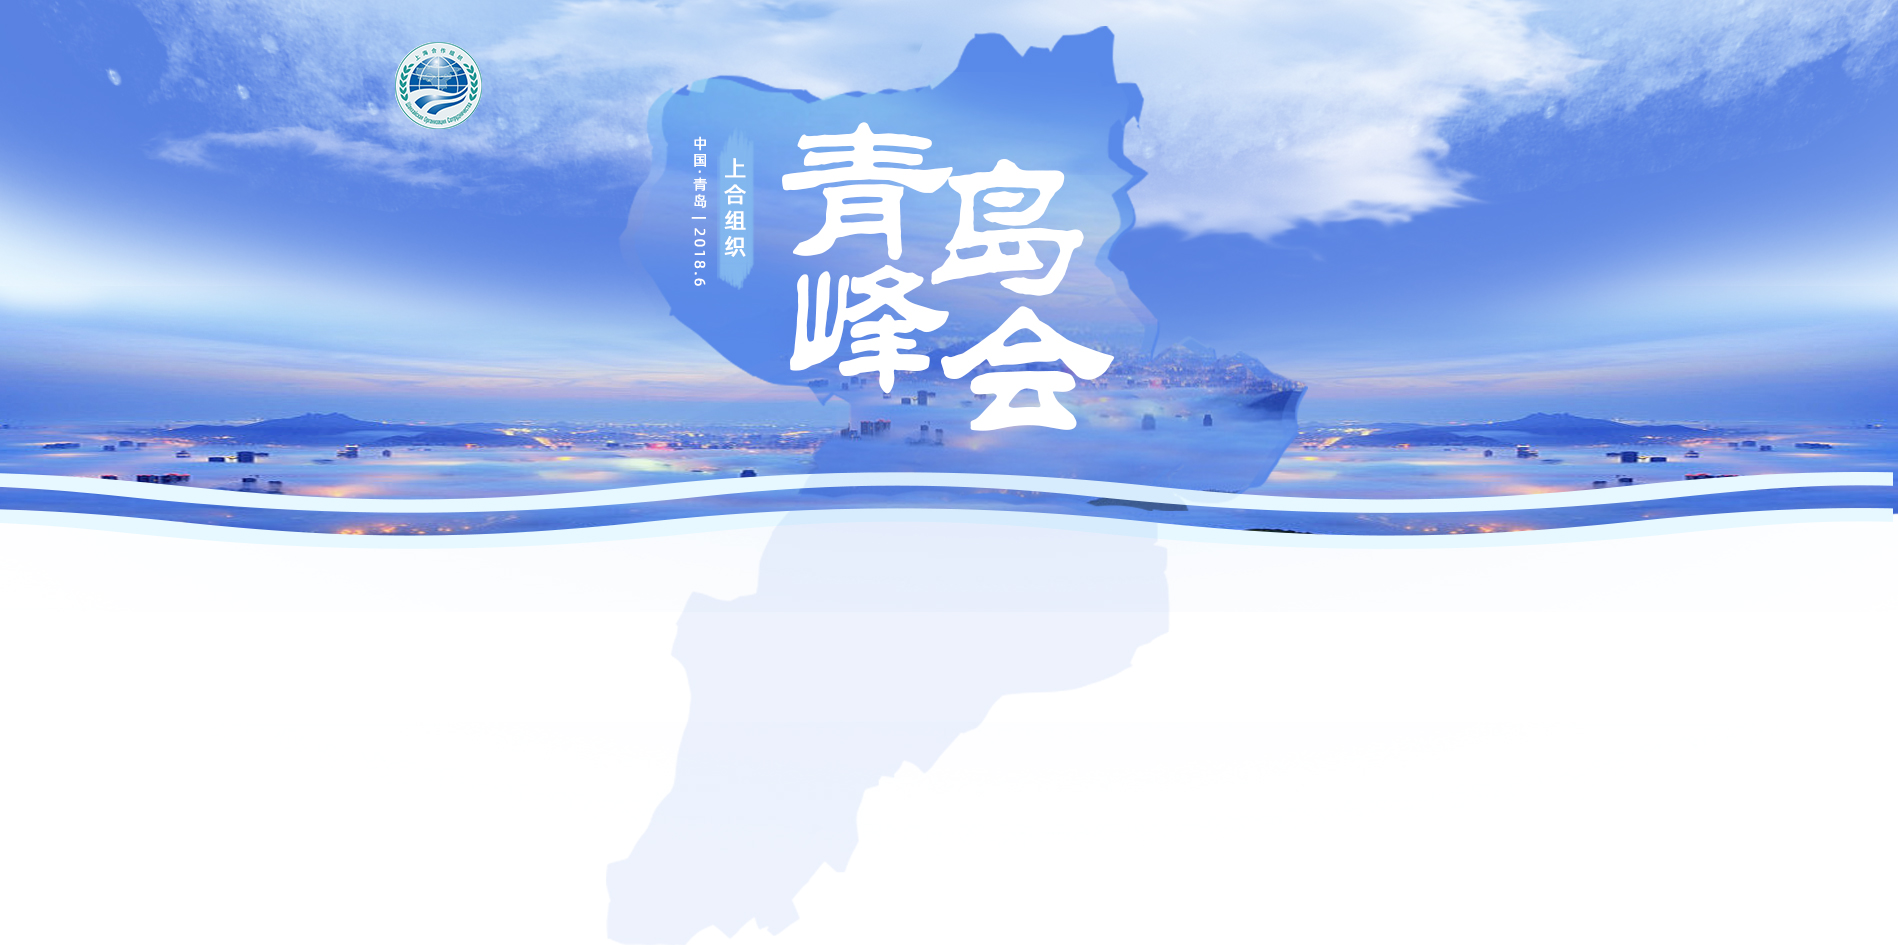 上海合作组织成员国元首理事会第十八次会议